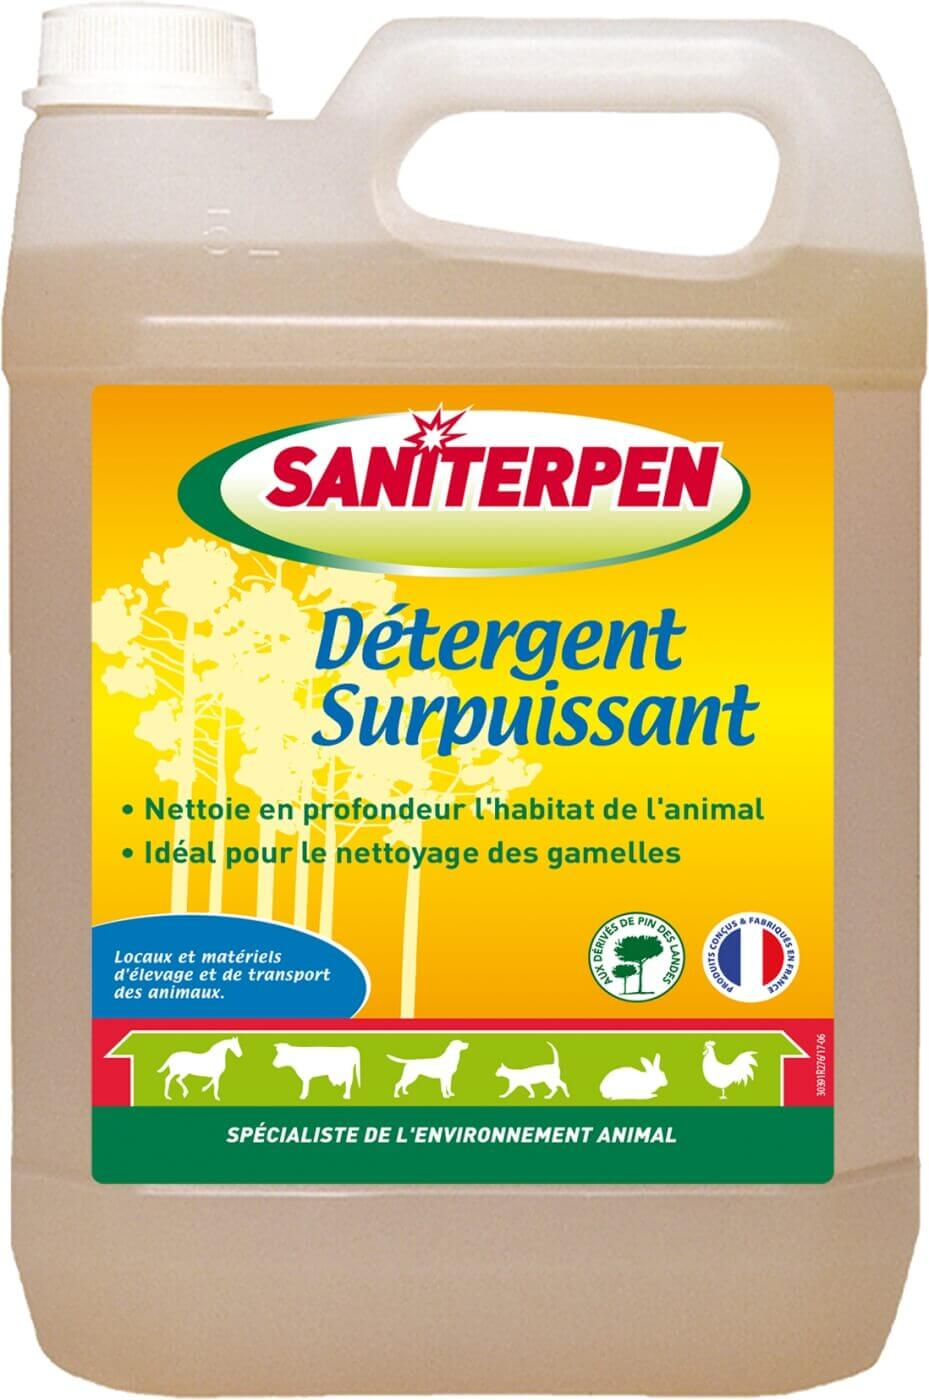 Detergente potente Saniterpen - 1 y 5 litros